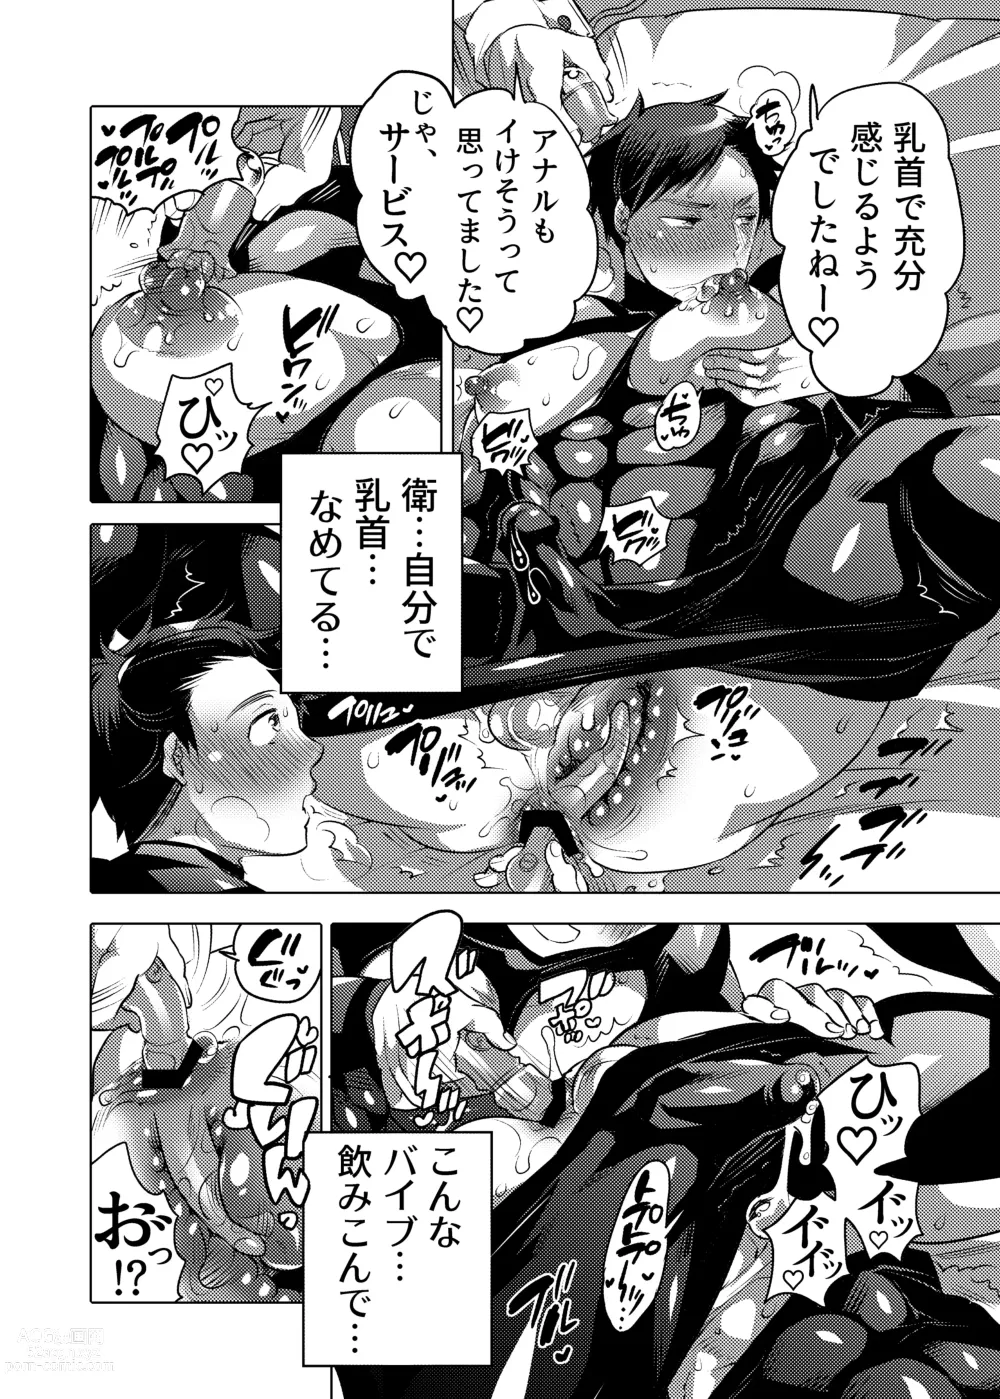 Page 18 of doujinshi Ochichi Hinpyoukai